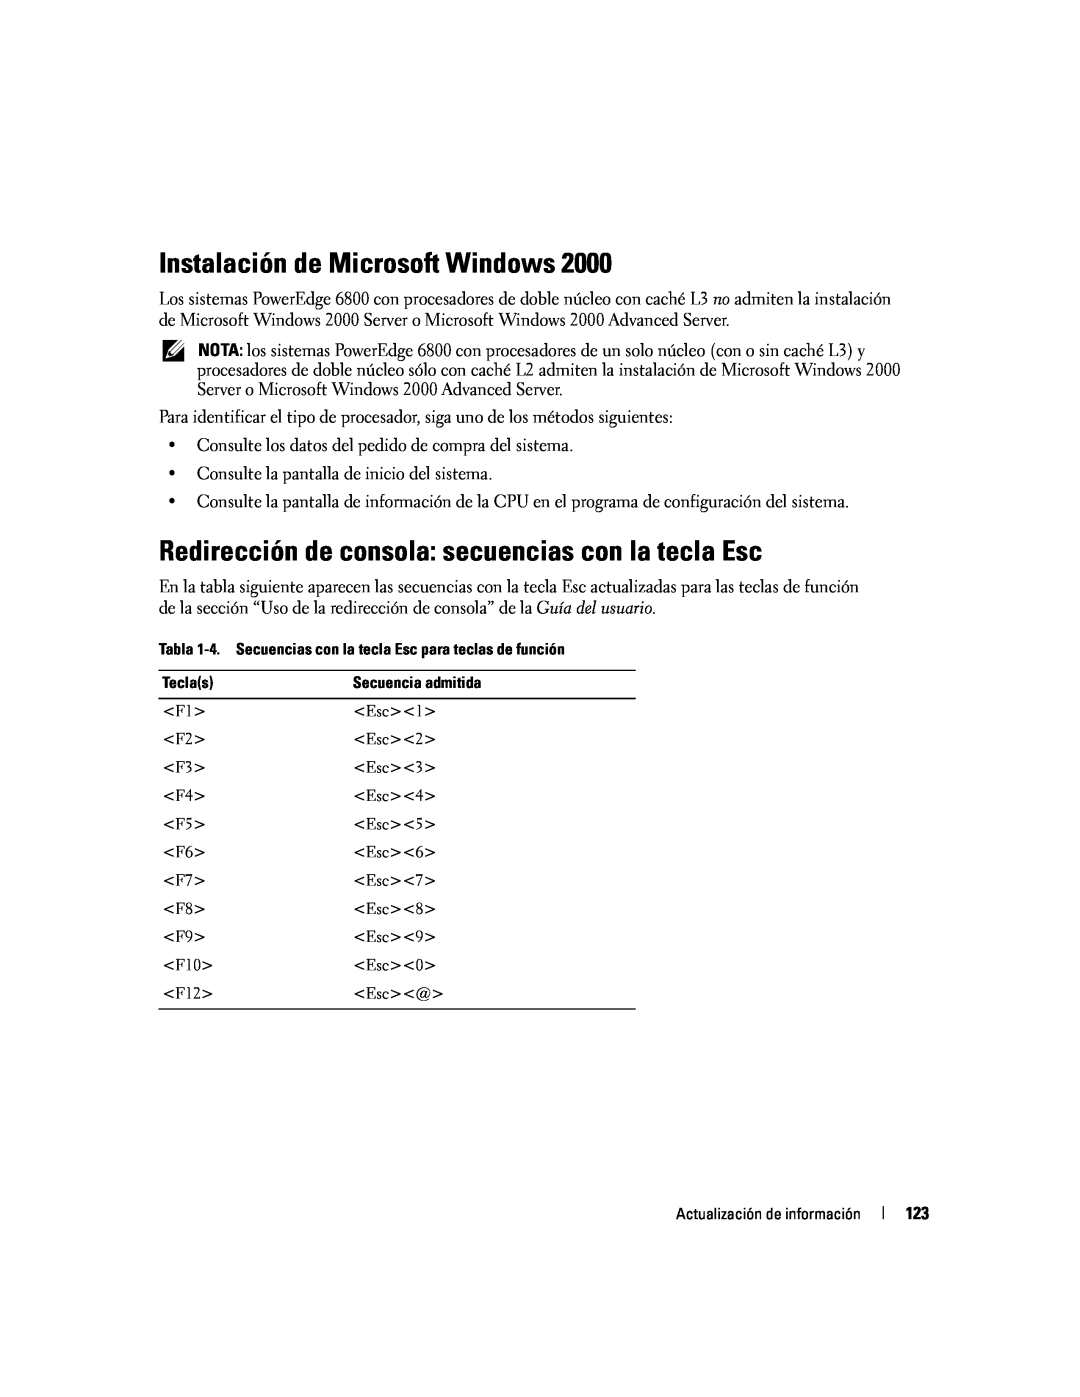 Dell 6800 manual Instalación de Microsoft Windows, Redirección de consola secuencias con la tecla Esc 